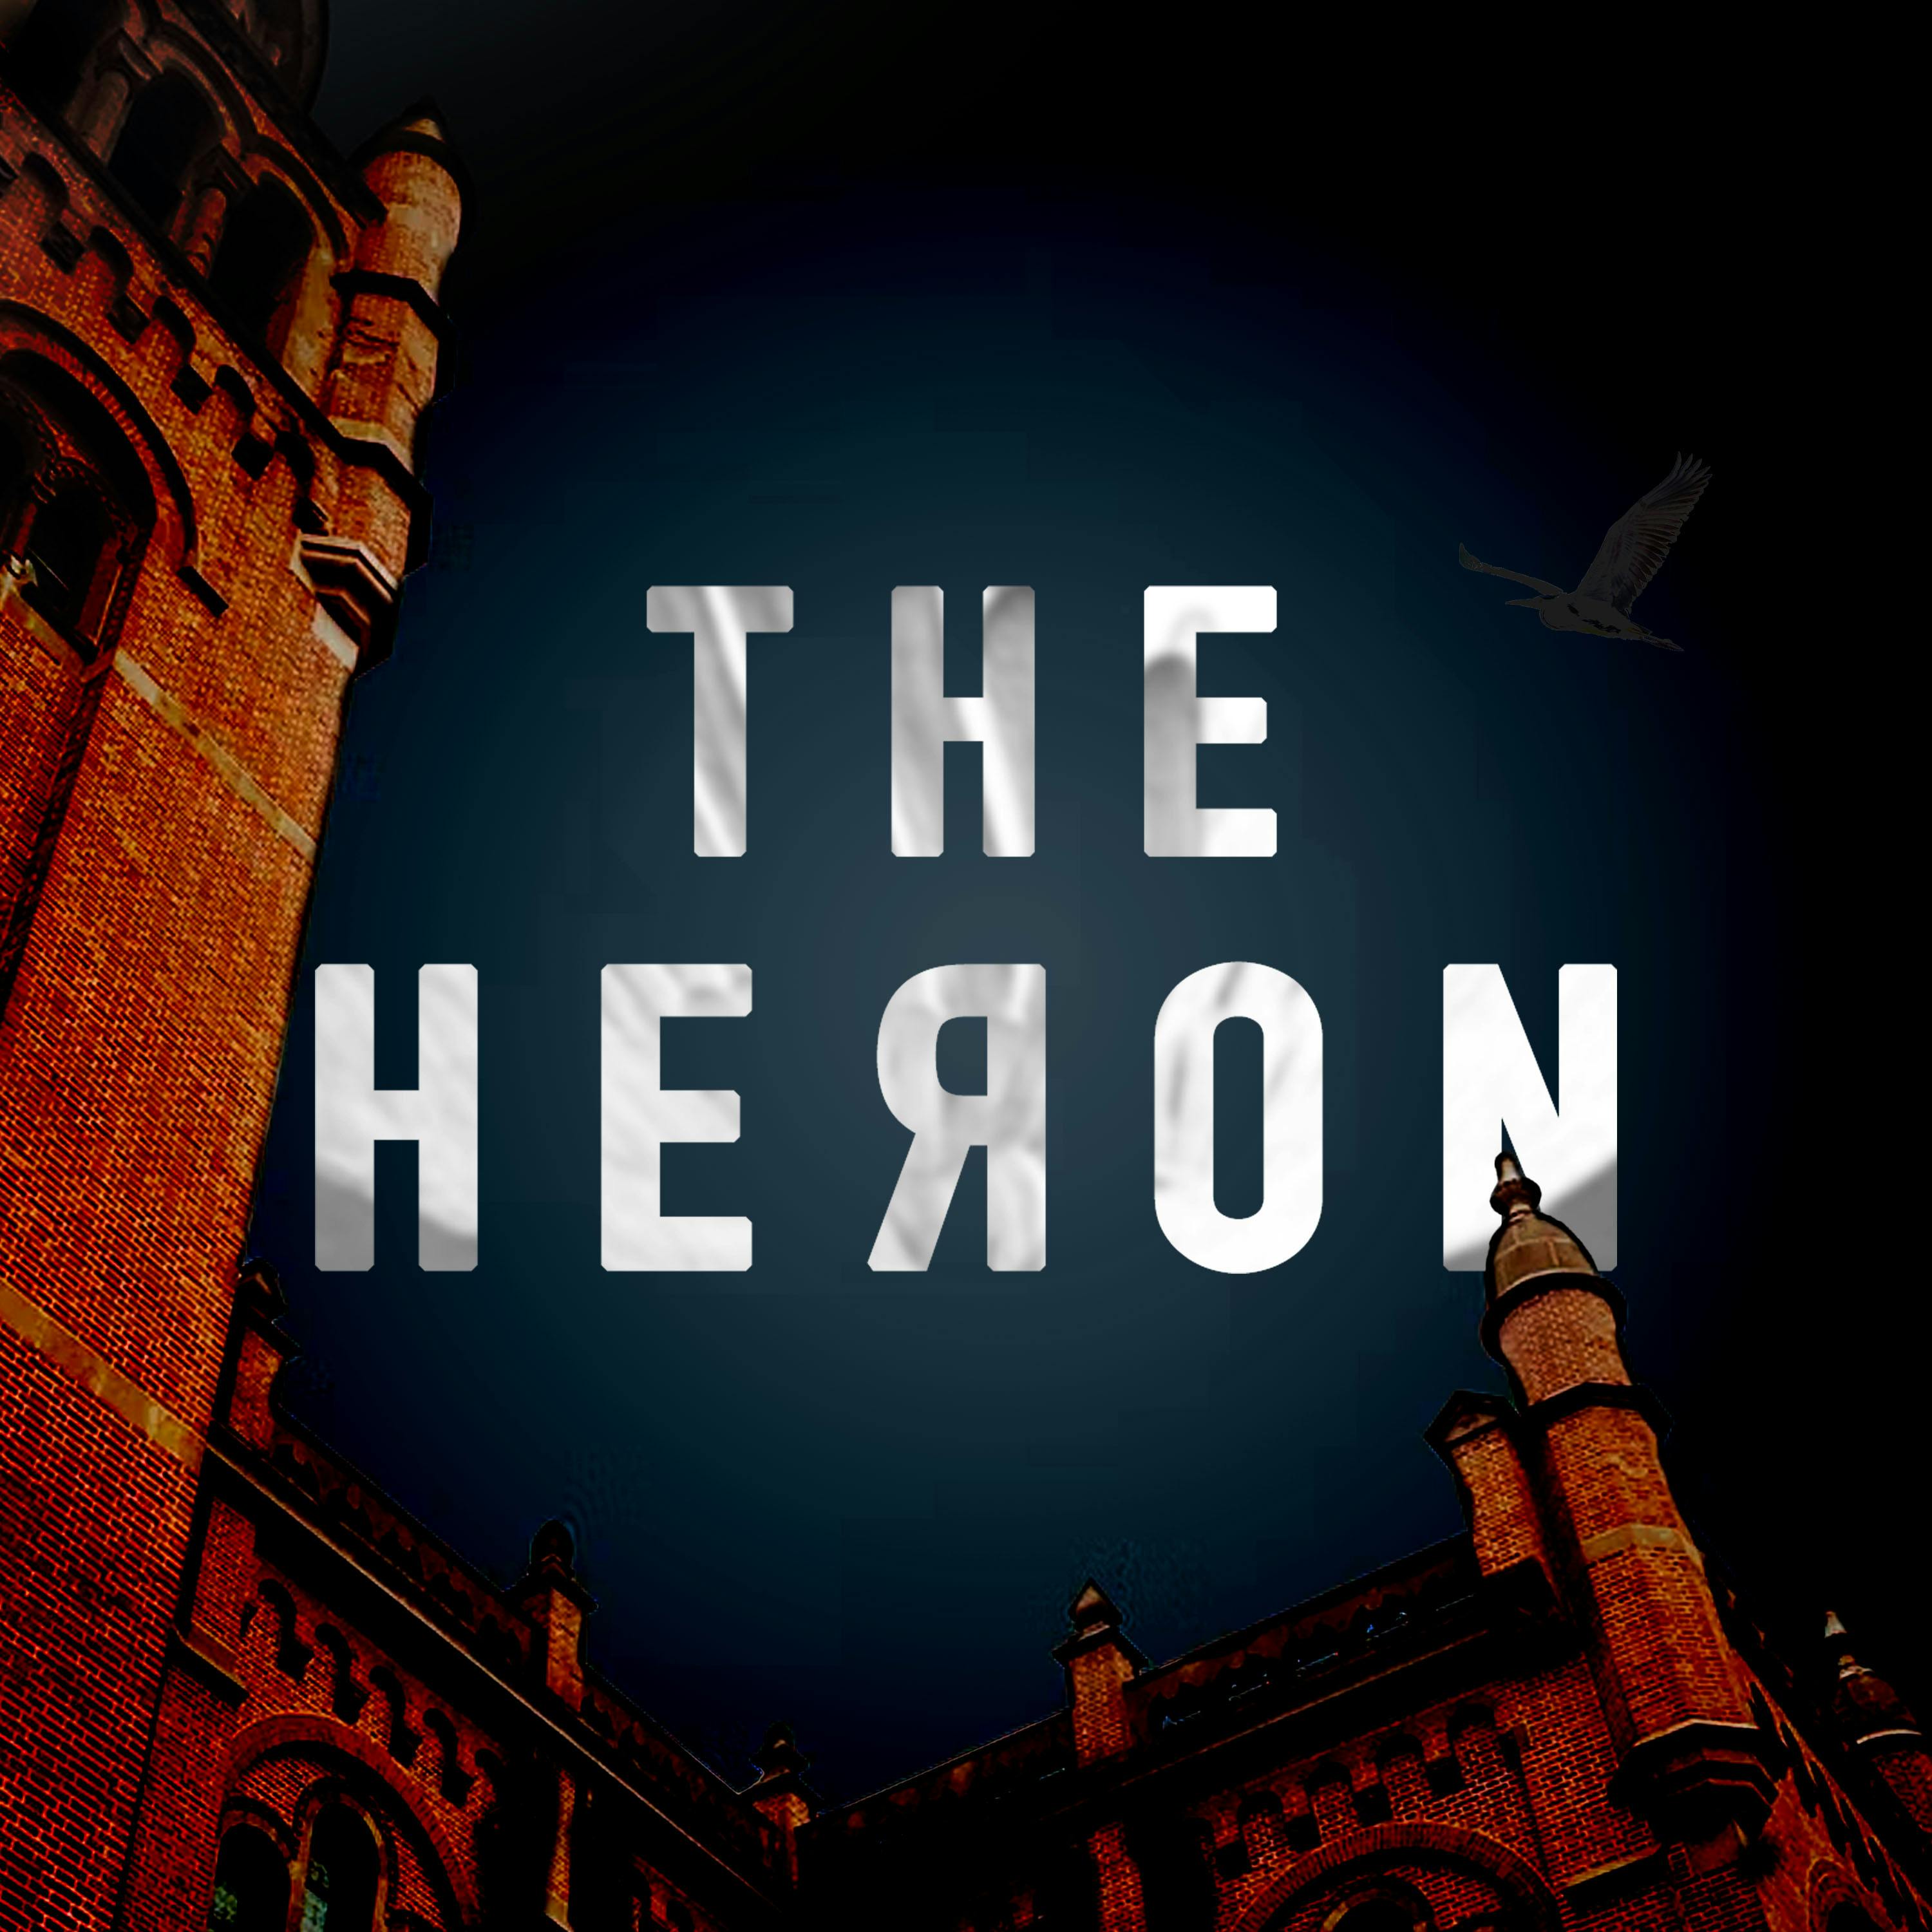 The Heron